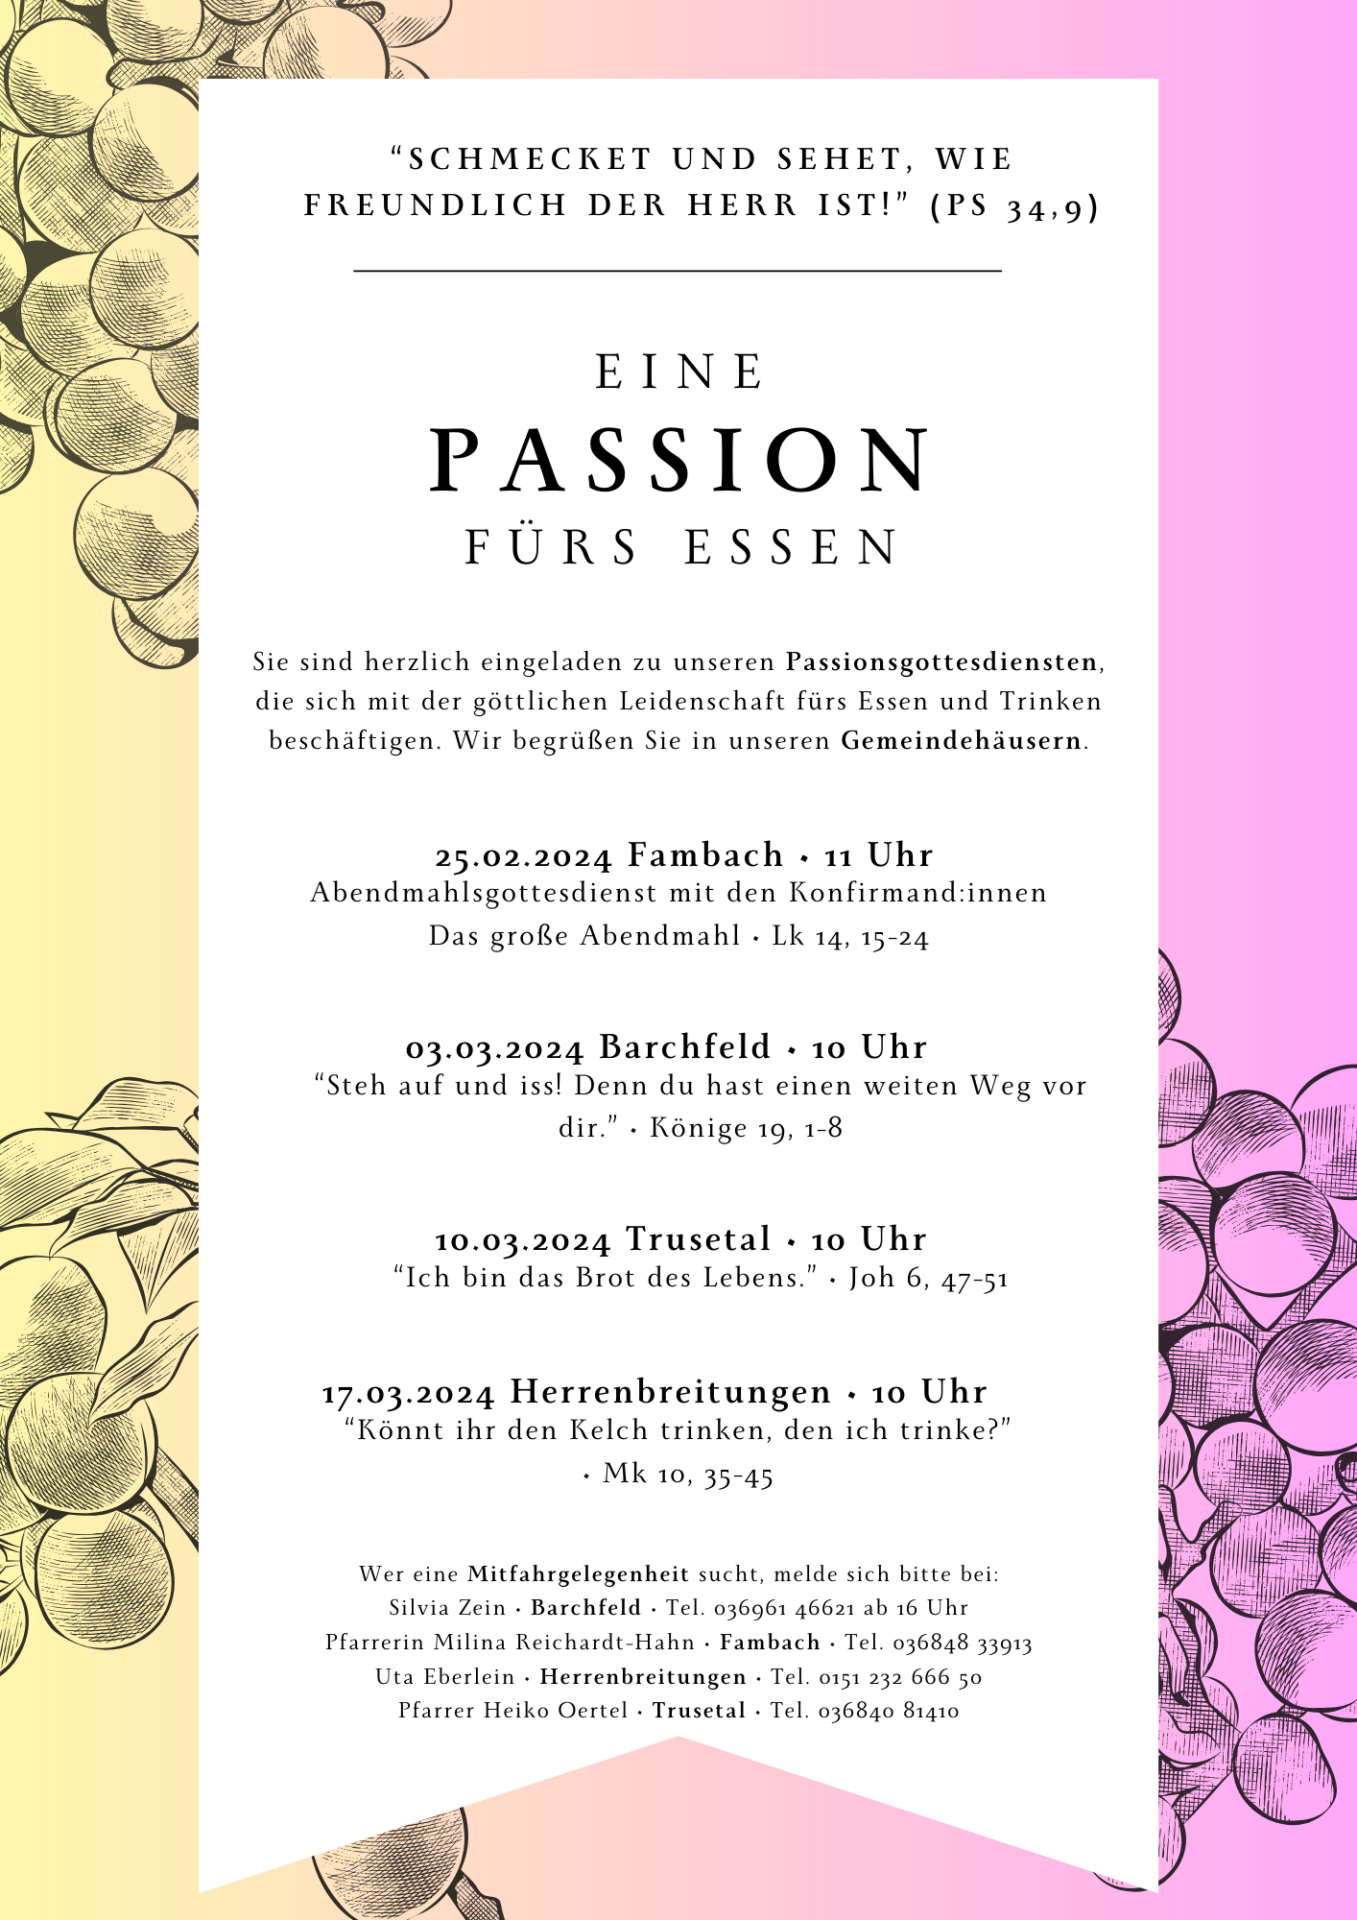 Passionsgottesdienste in Fambach, Trusetal, Barchfeld und Herrenbreitungen